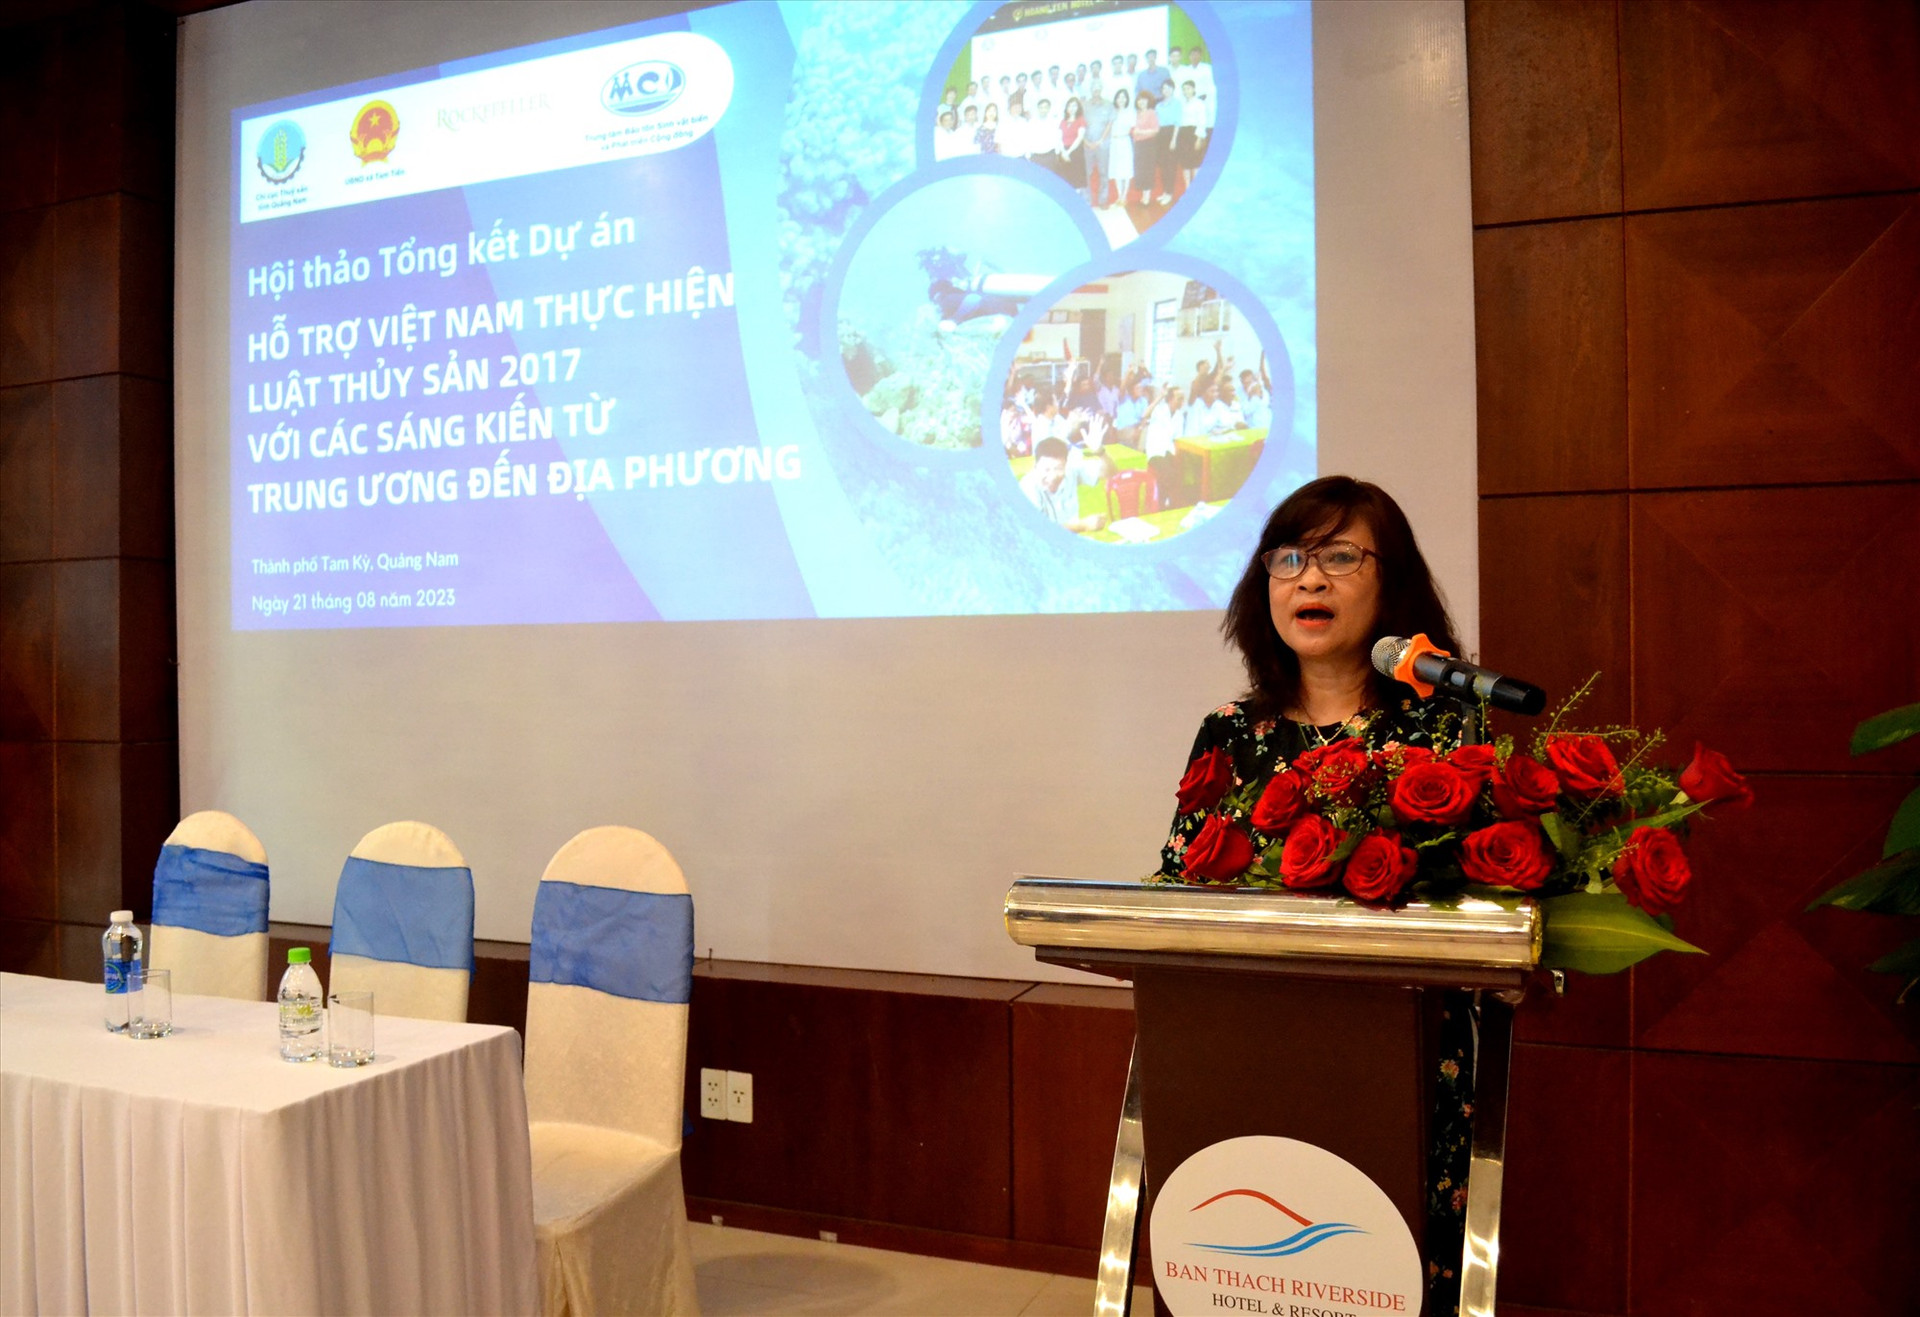 Bà Nguyễn Thu Huệ - Giám đốc Trung tâm Bảo tồn sinh vật biển và phát triển cộng đồng (MCD) phát biểu tại hội thảo. Ảnh: Q.VIỆT